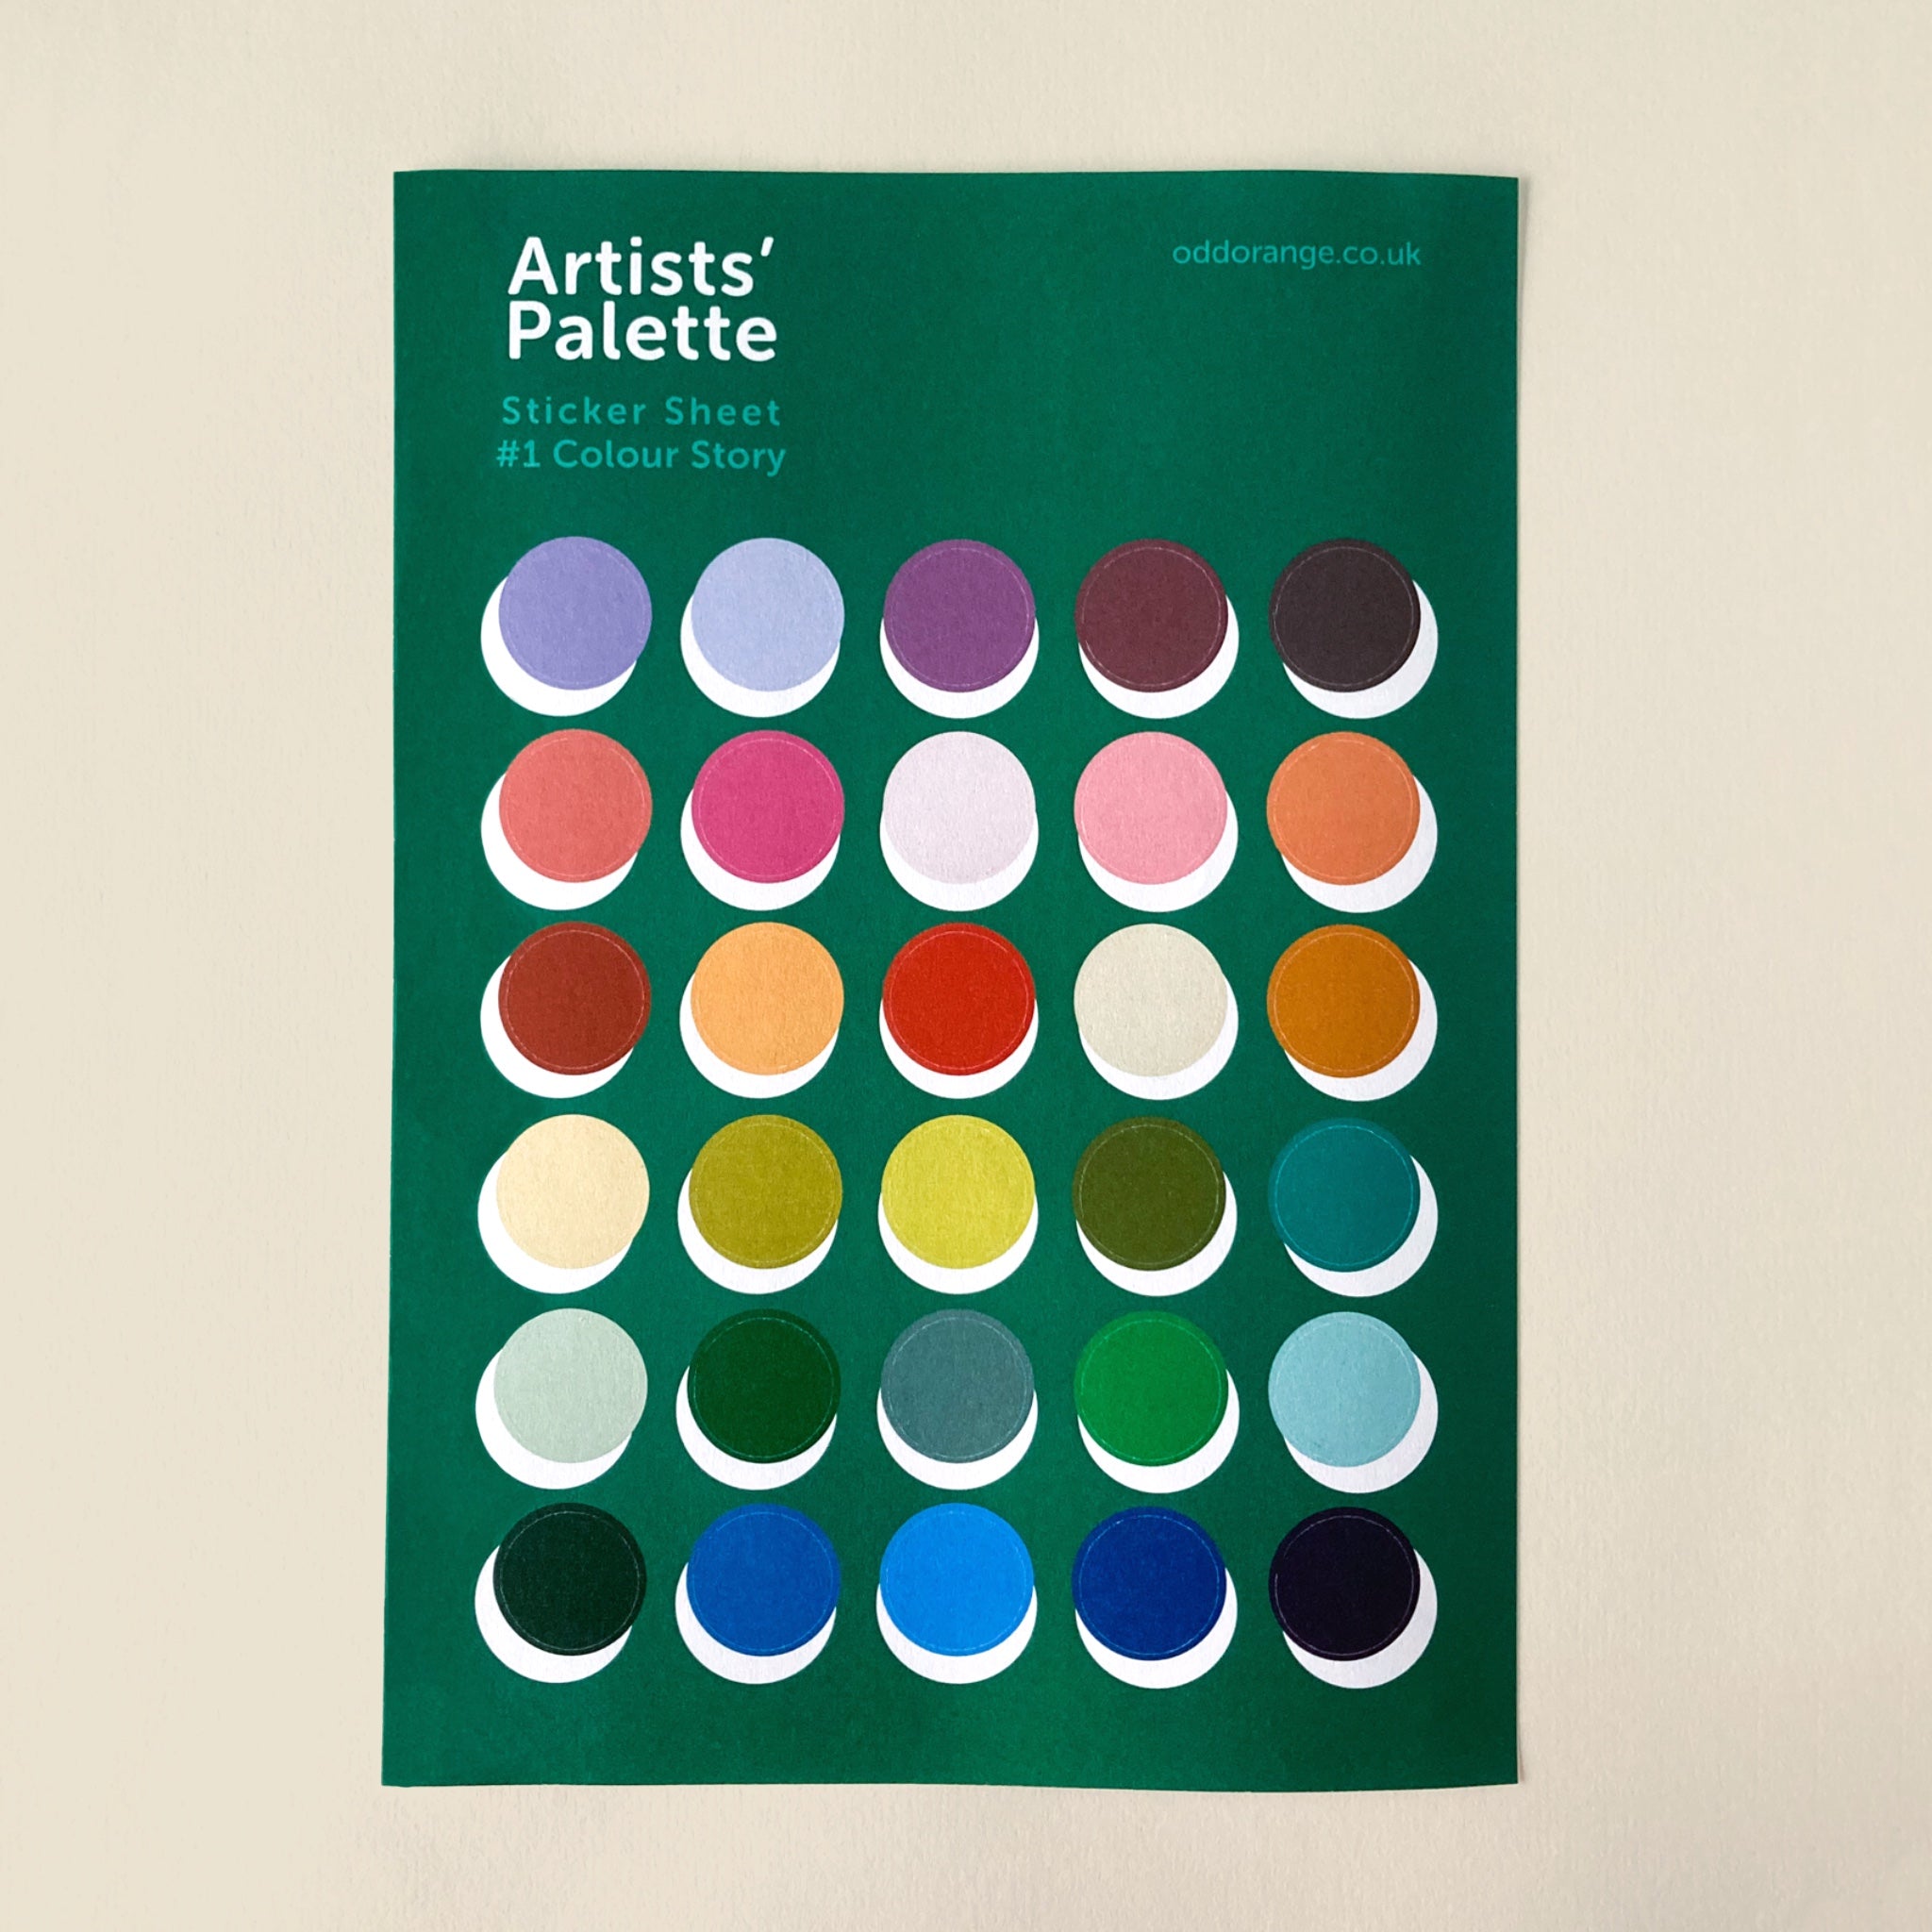 Artists' Palette sticker sheet